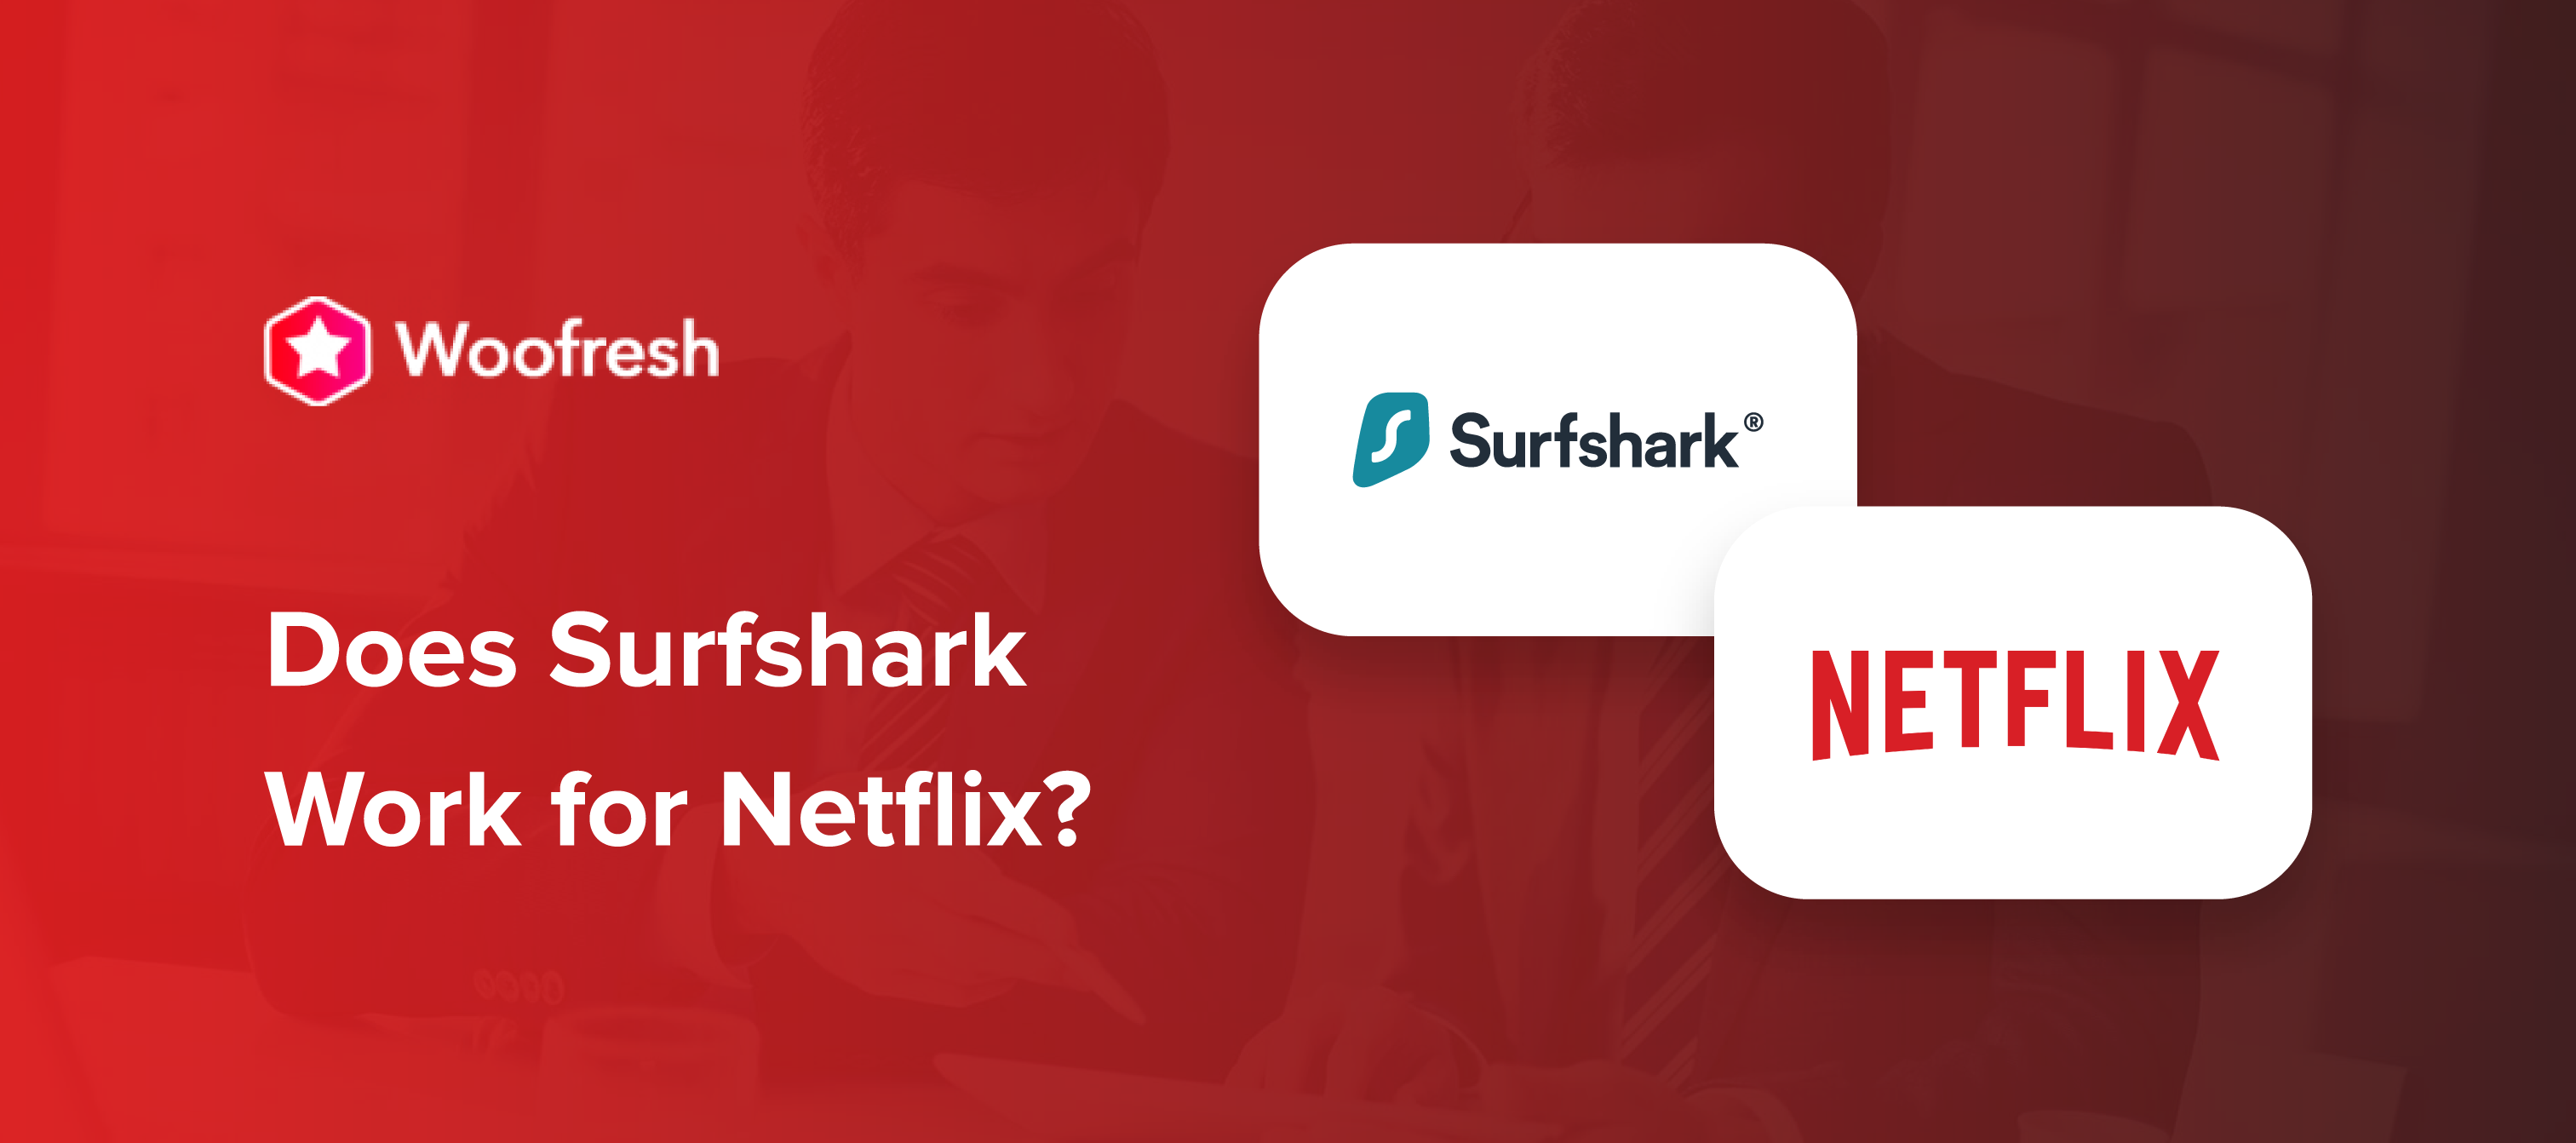 Does Surfshark Work for Netflix?